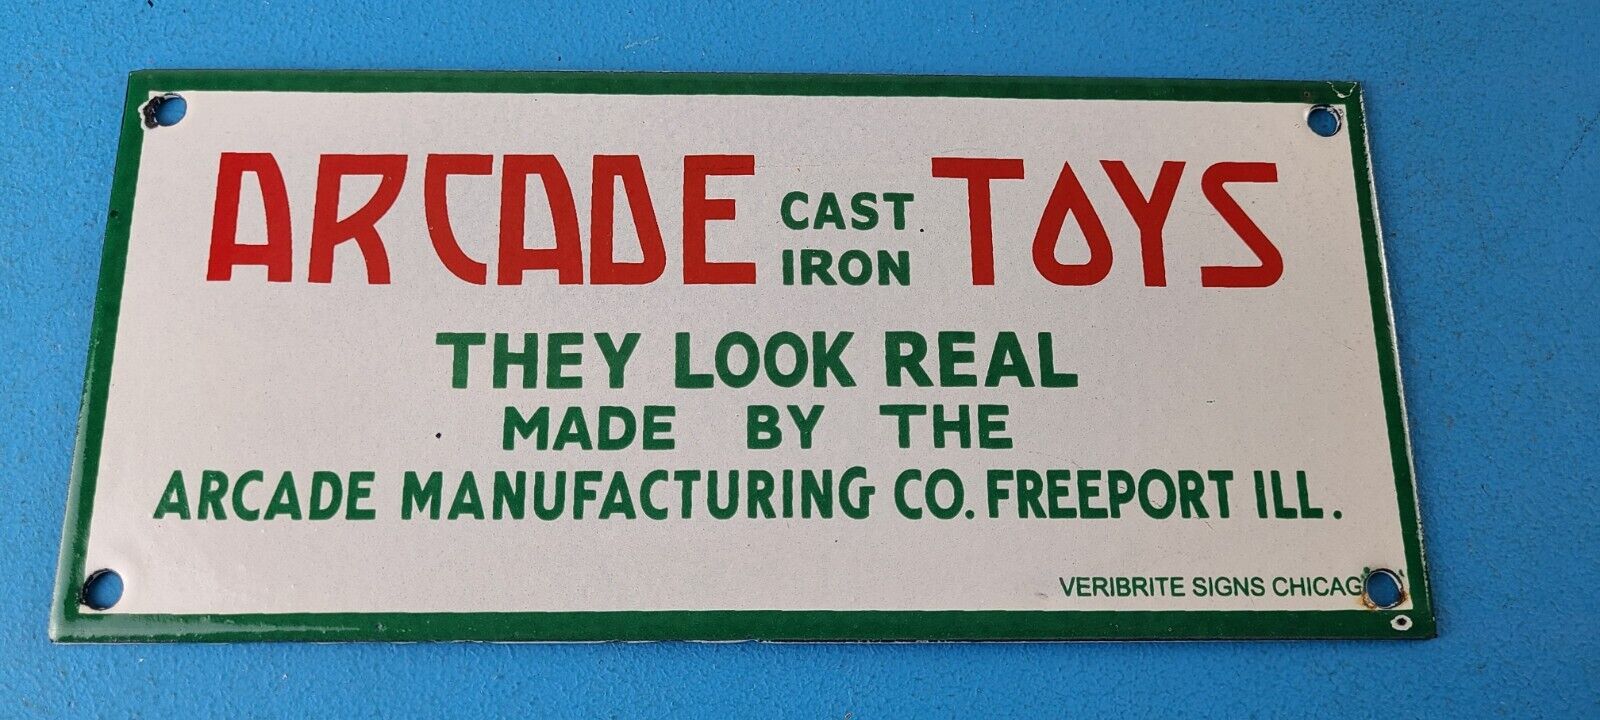 Vintage Arcade Toys Sign - Cast Iron Collectibles Gas Pump Auto Porcelain Sign